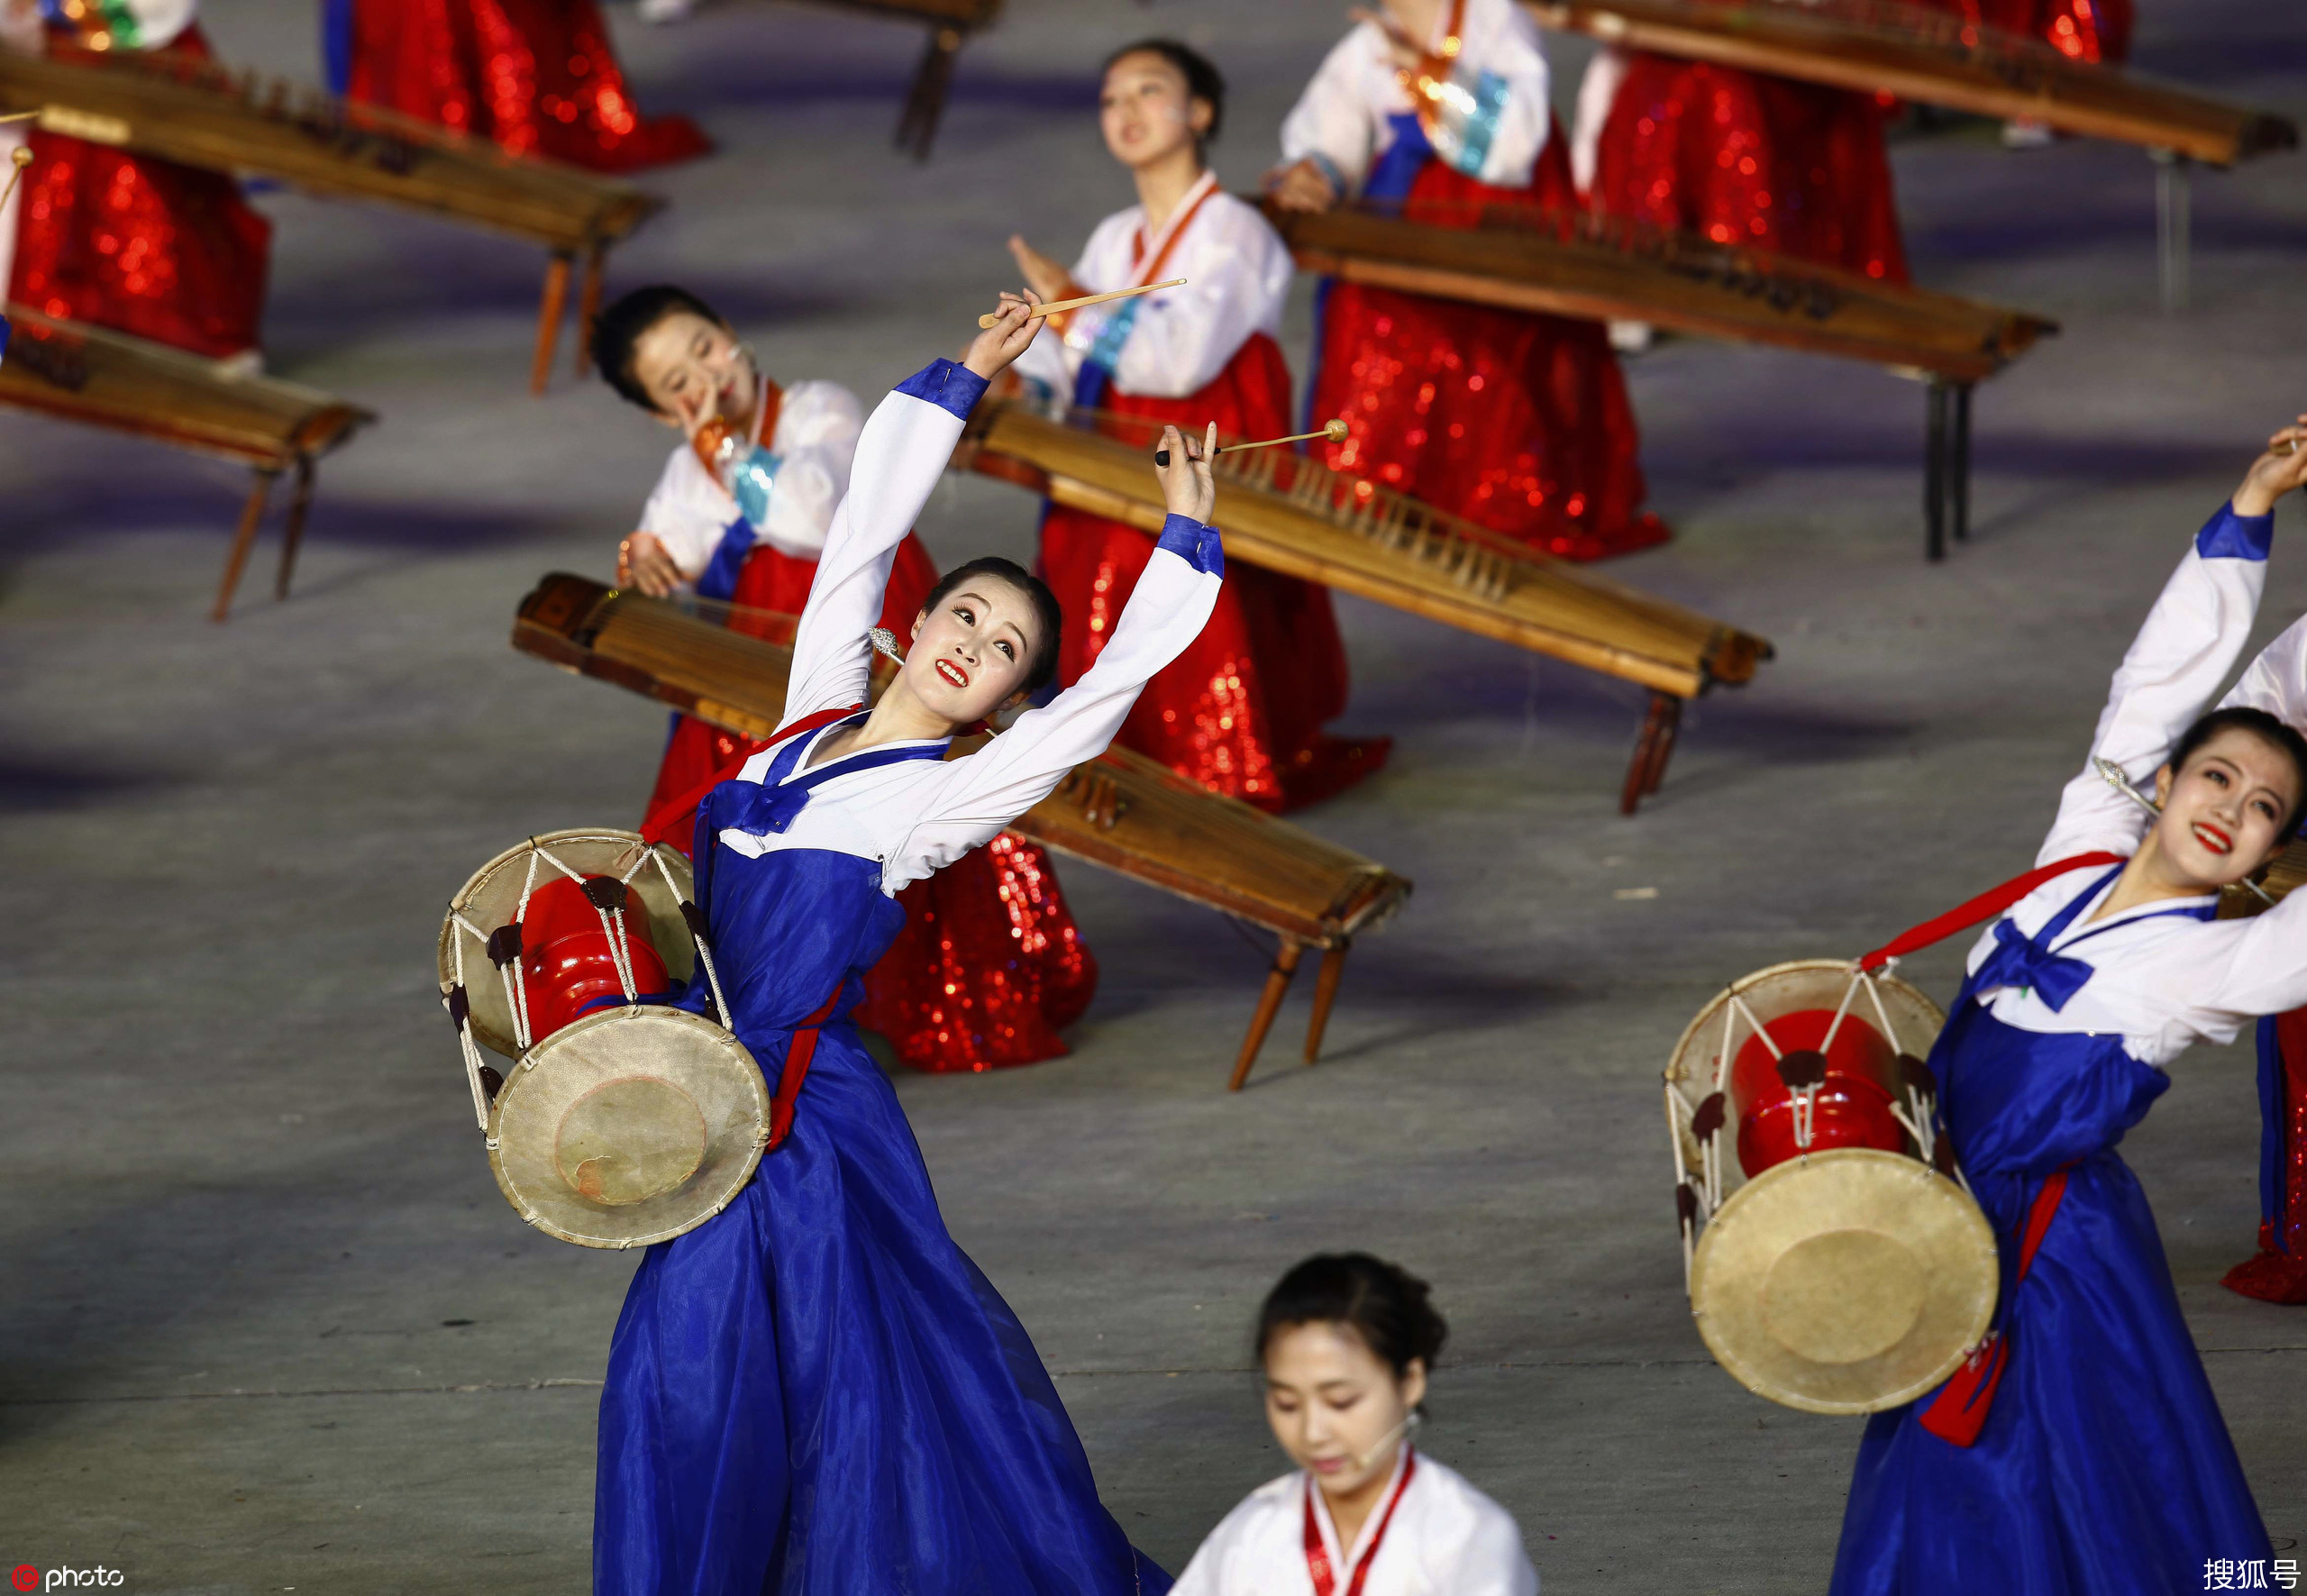 1/ 12 当地时间2015年8月31日,俄罗斯莫斯科,朝鲜人民军国家功勋合唱